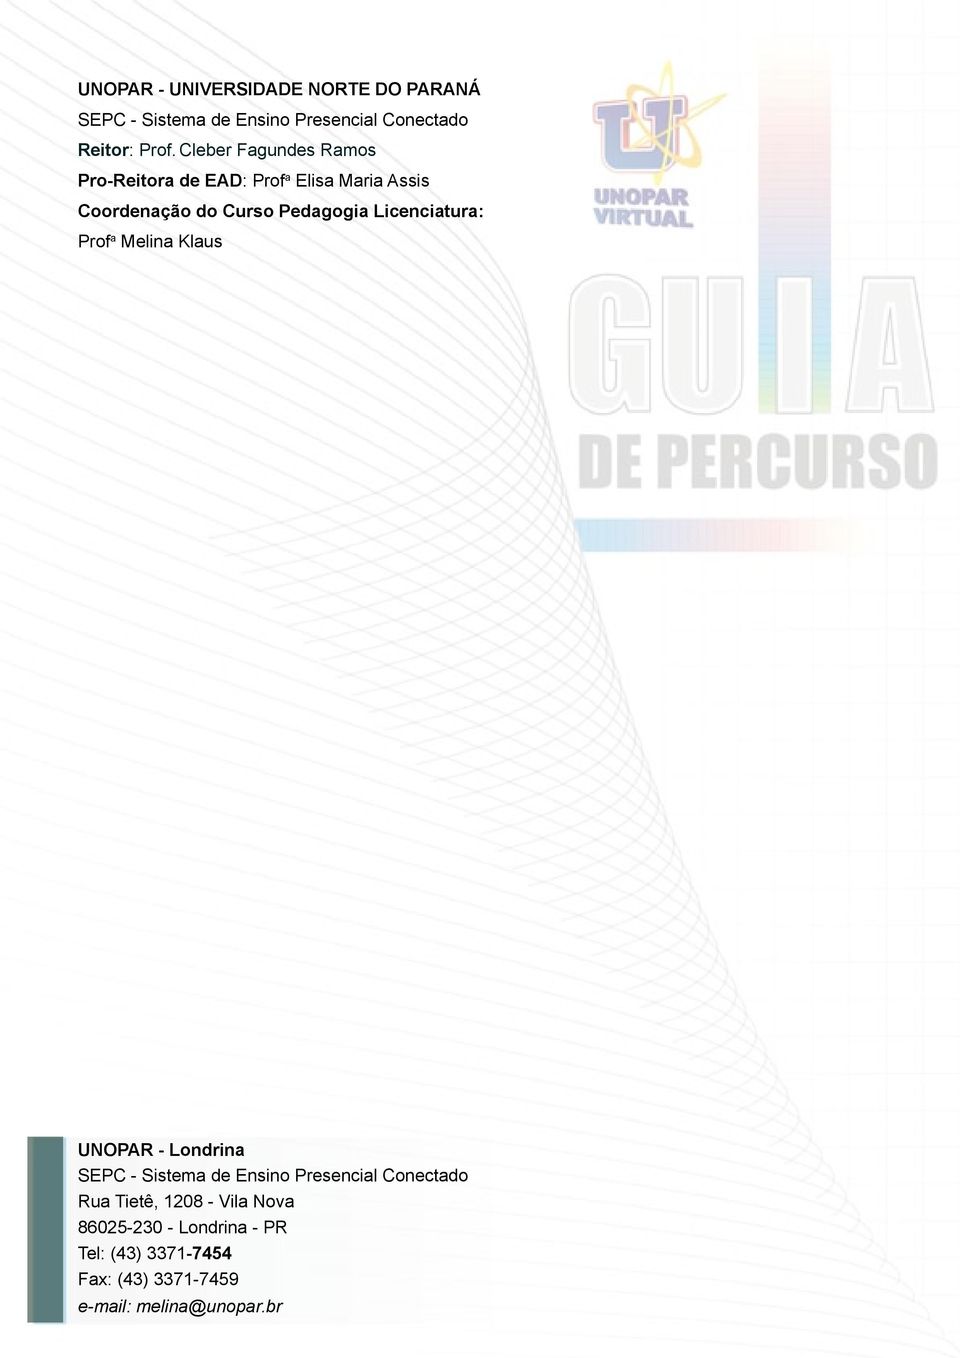 Licenciatura: Prof a Melina Klaus UNOPAR - Londrina SEPC - Sistema de Ensino Presencial Conectado Rua